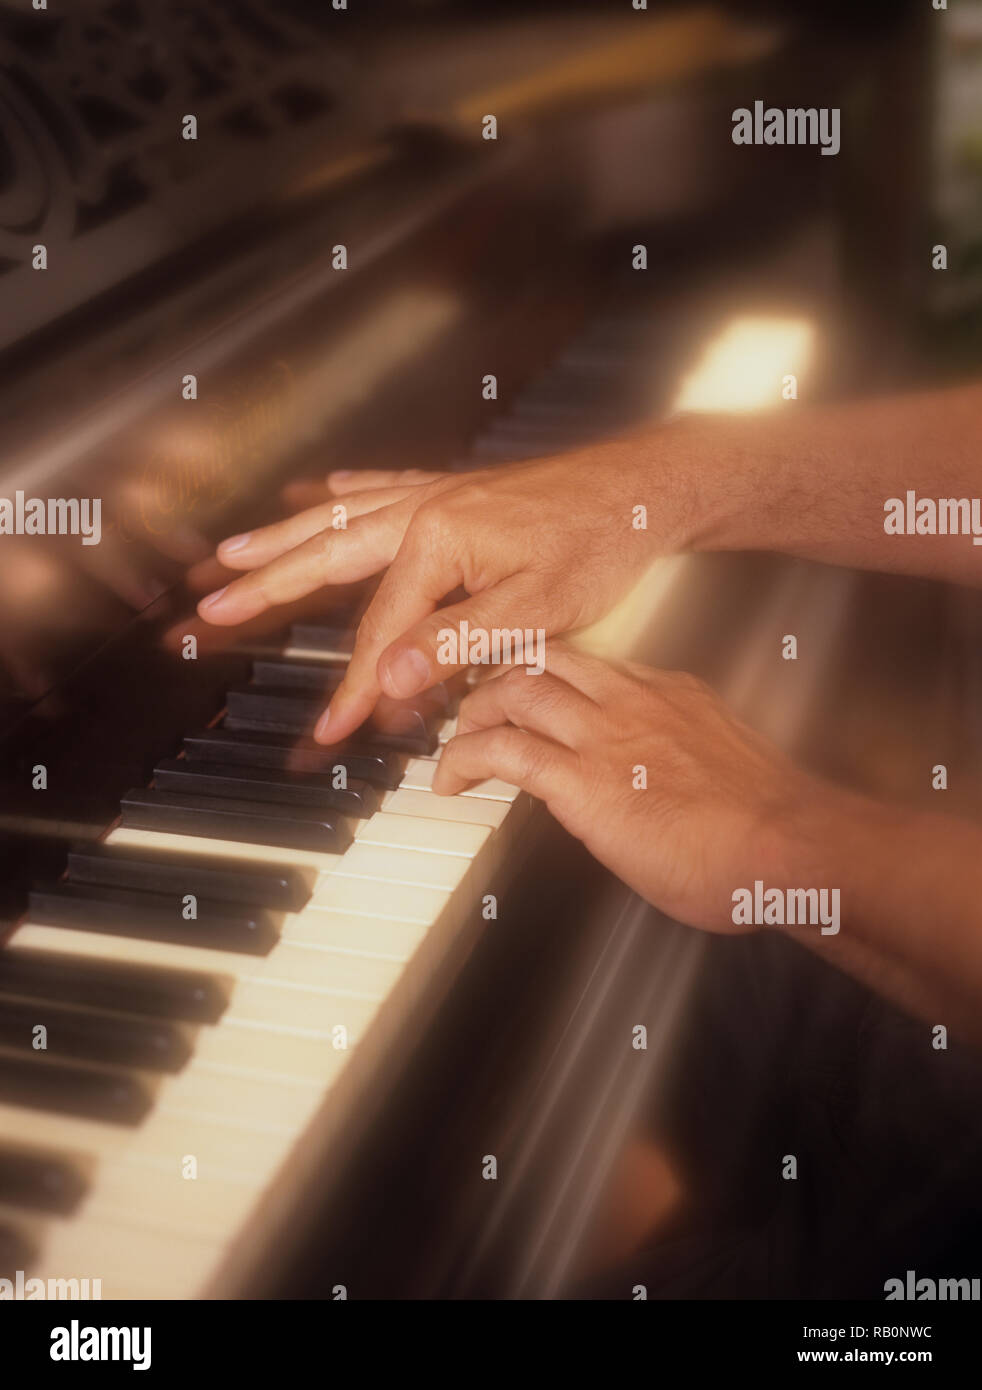 Uomo giocando attivamente il pianoforte con un morbido effetto di filtro per enfatizzare la pressione dei tasti di pianoforte in tempo reale Foto Stock